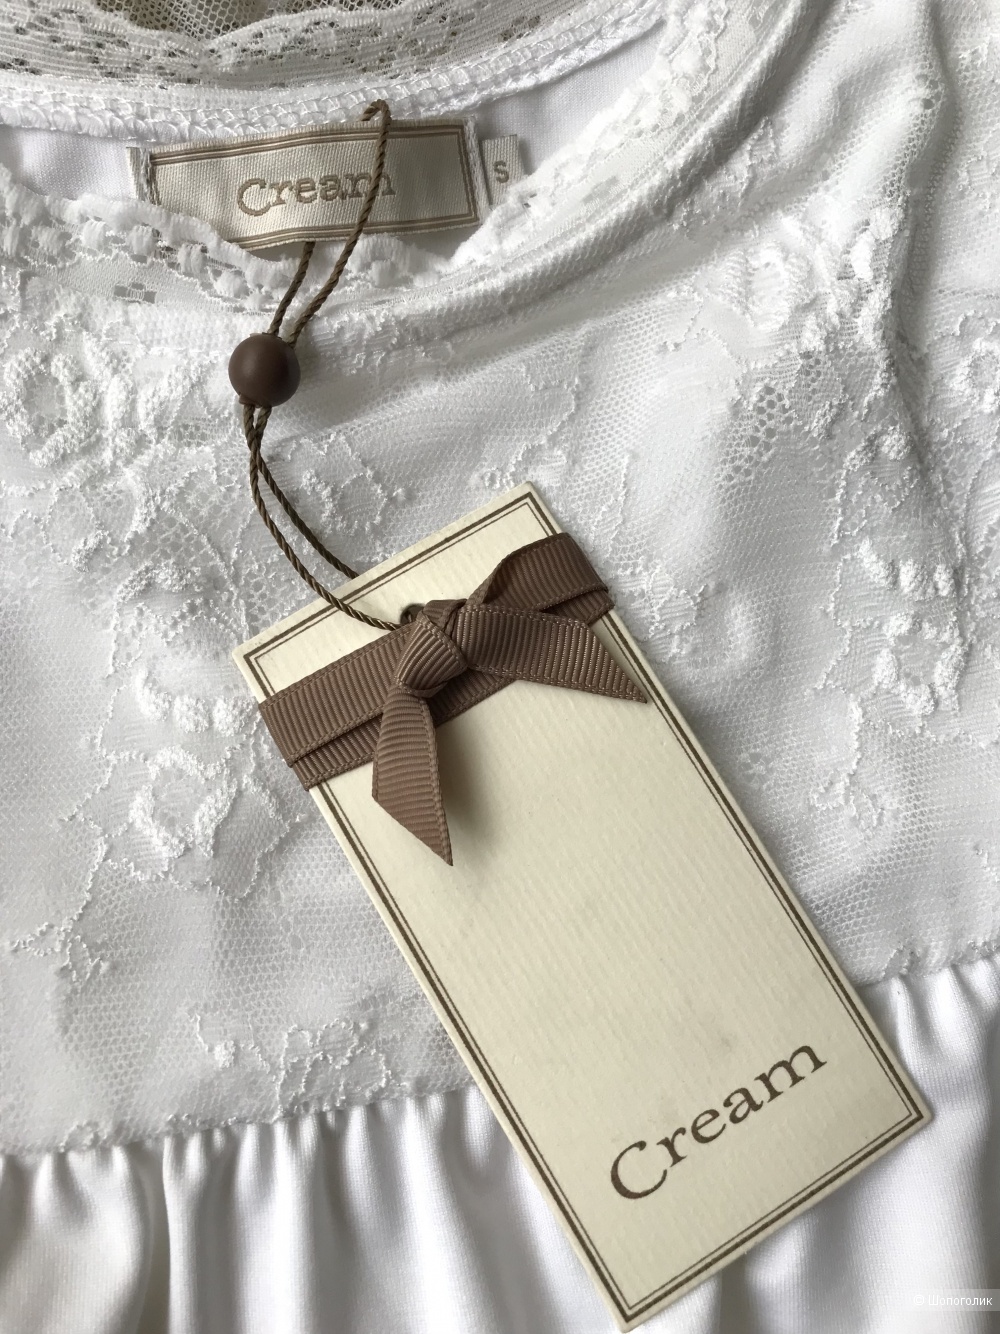 Платье-сарафан Cream. INT S (42 RU)